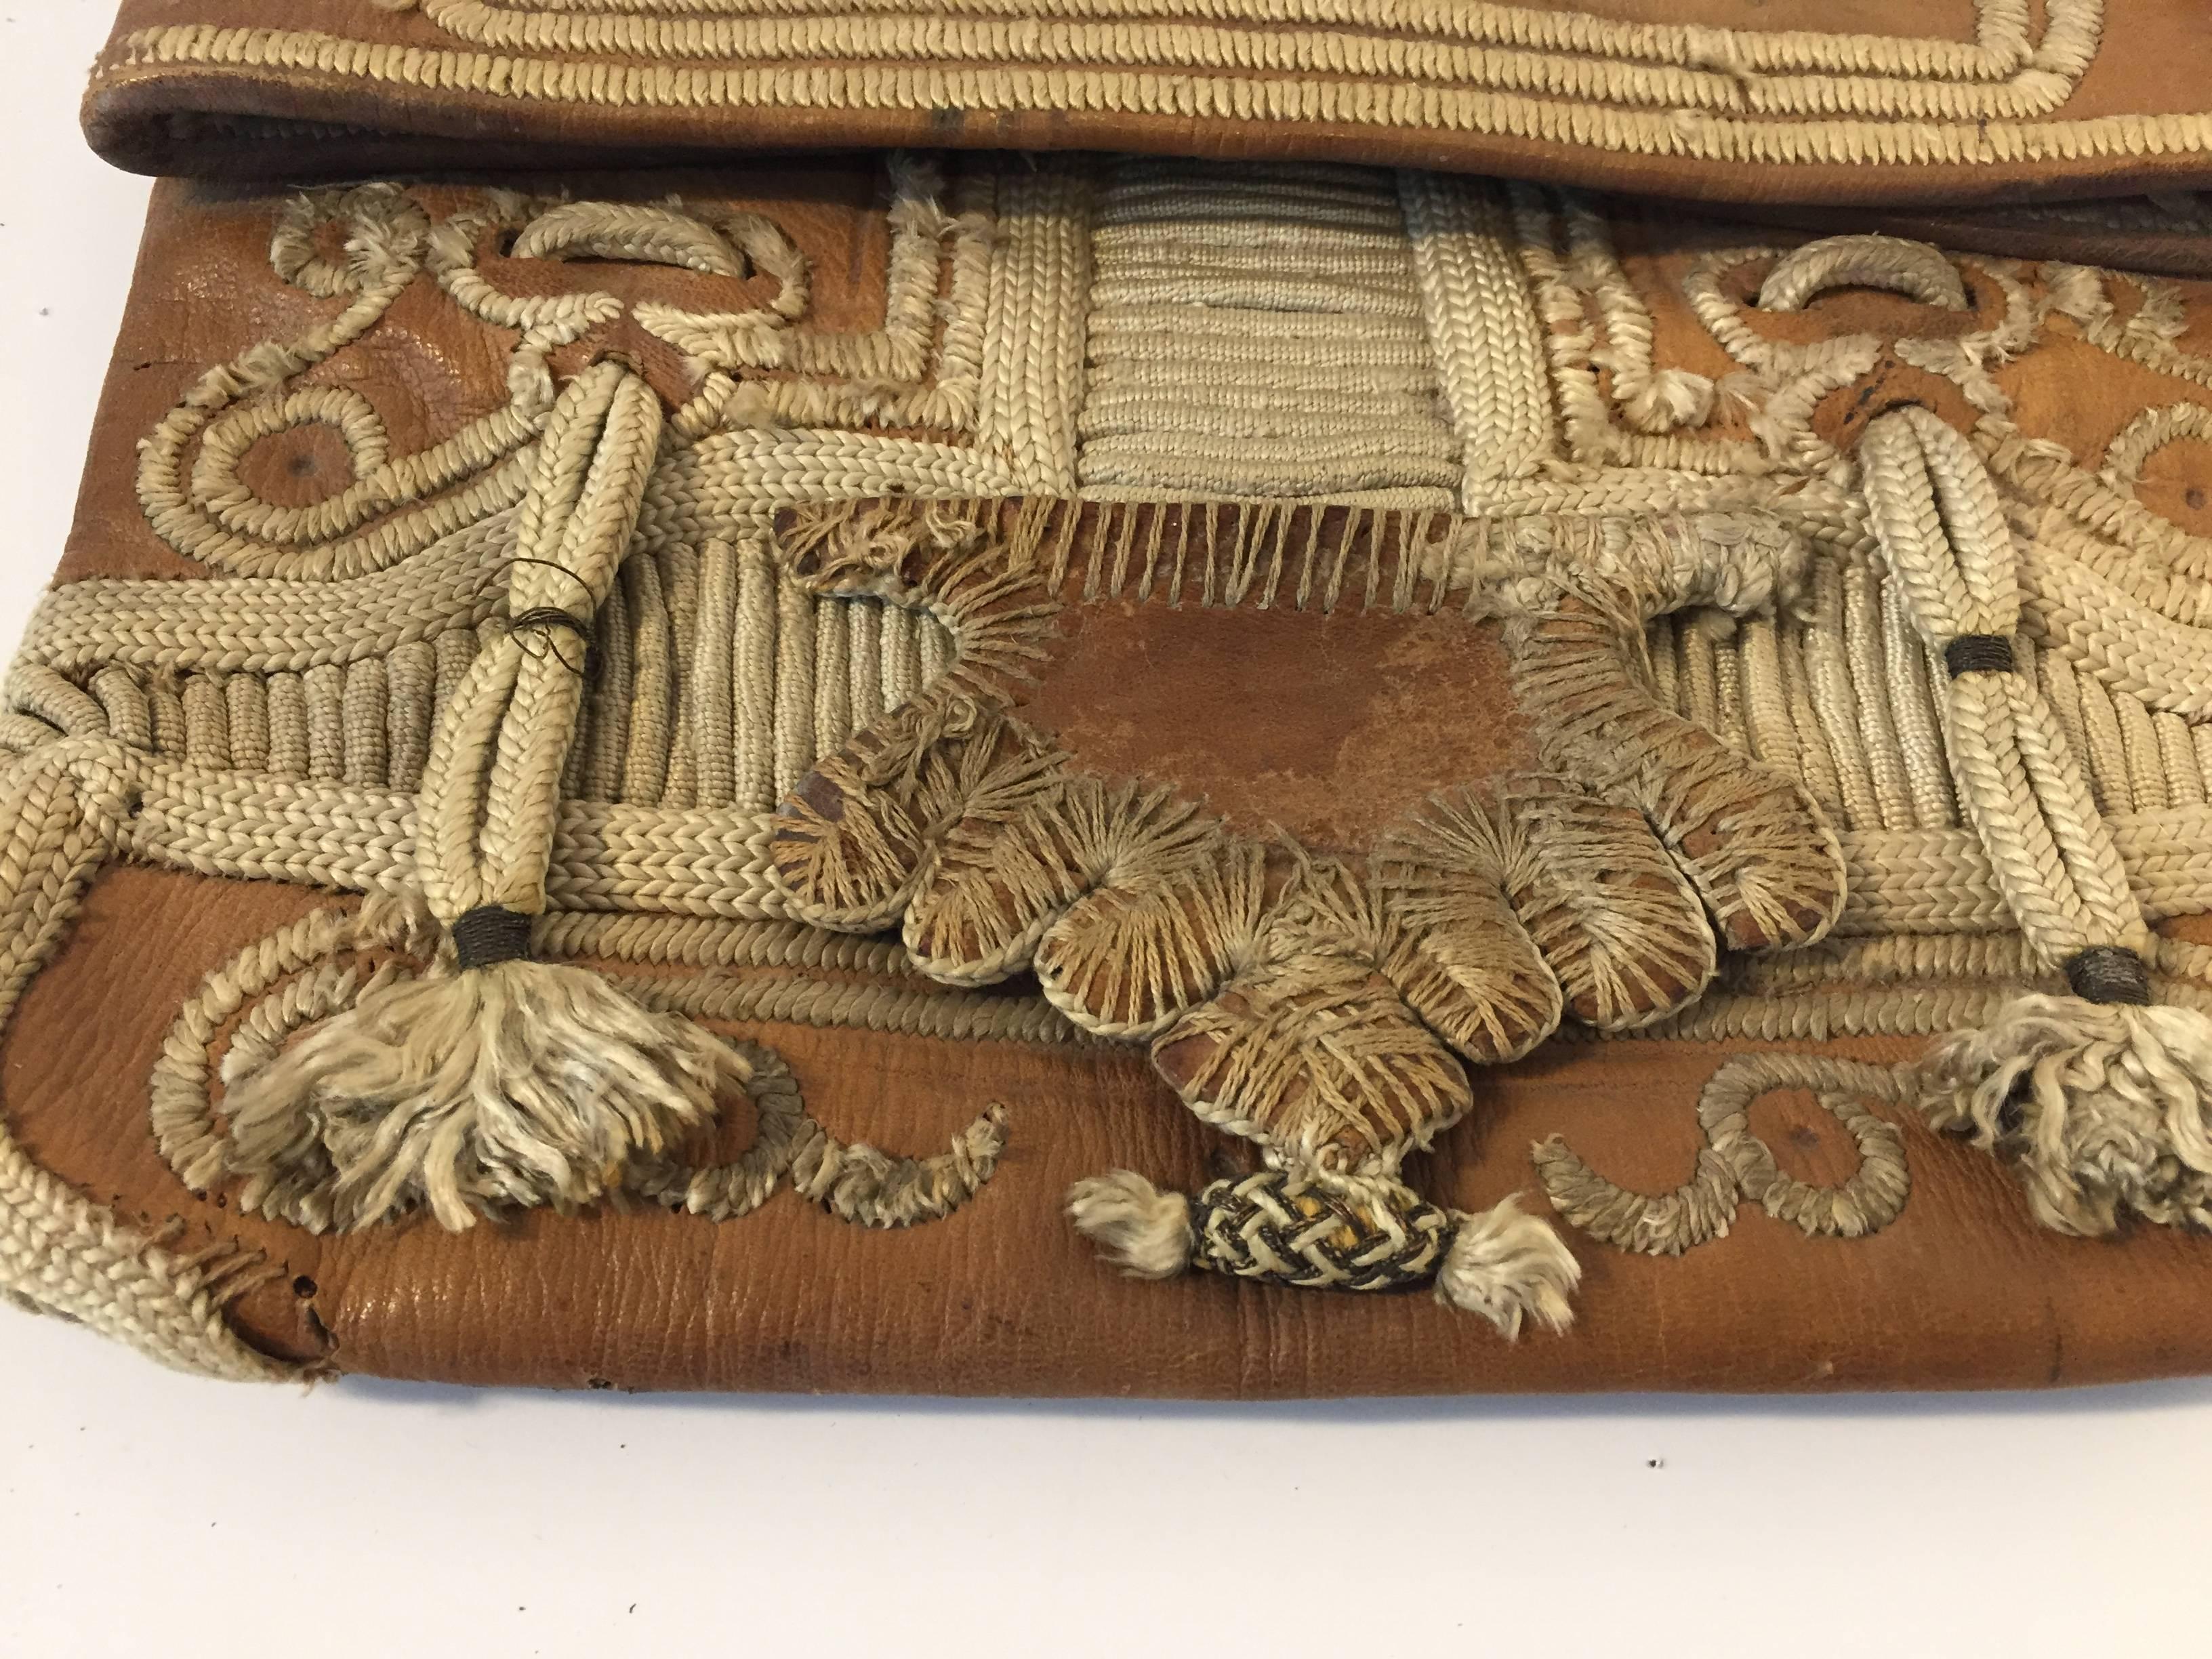 Afrikanische marokkanische Umhängetasche aus altem Leder mit Klappe, verziert mit Stammesstickereien.
Handgefertigt in Marrakesch, ist dies ein alter antiker Mann Schulter schlanke Tasche, Kaufleute in Marokko, wenn sie reisen verwendet diese Tasche